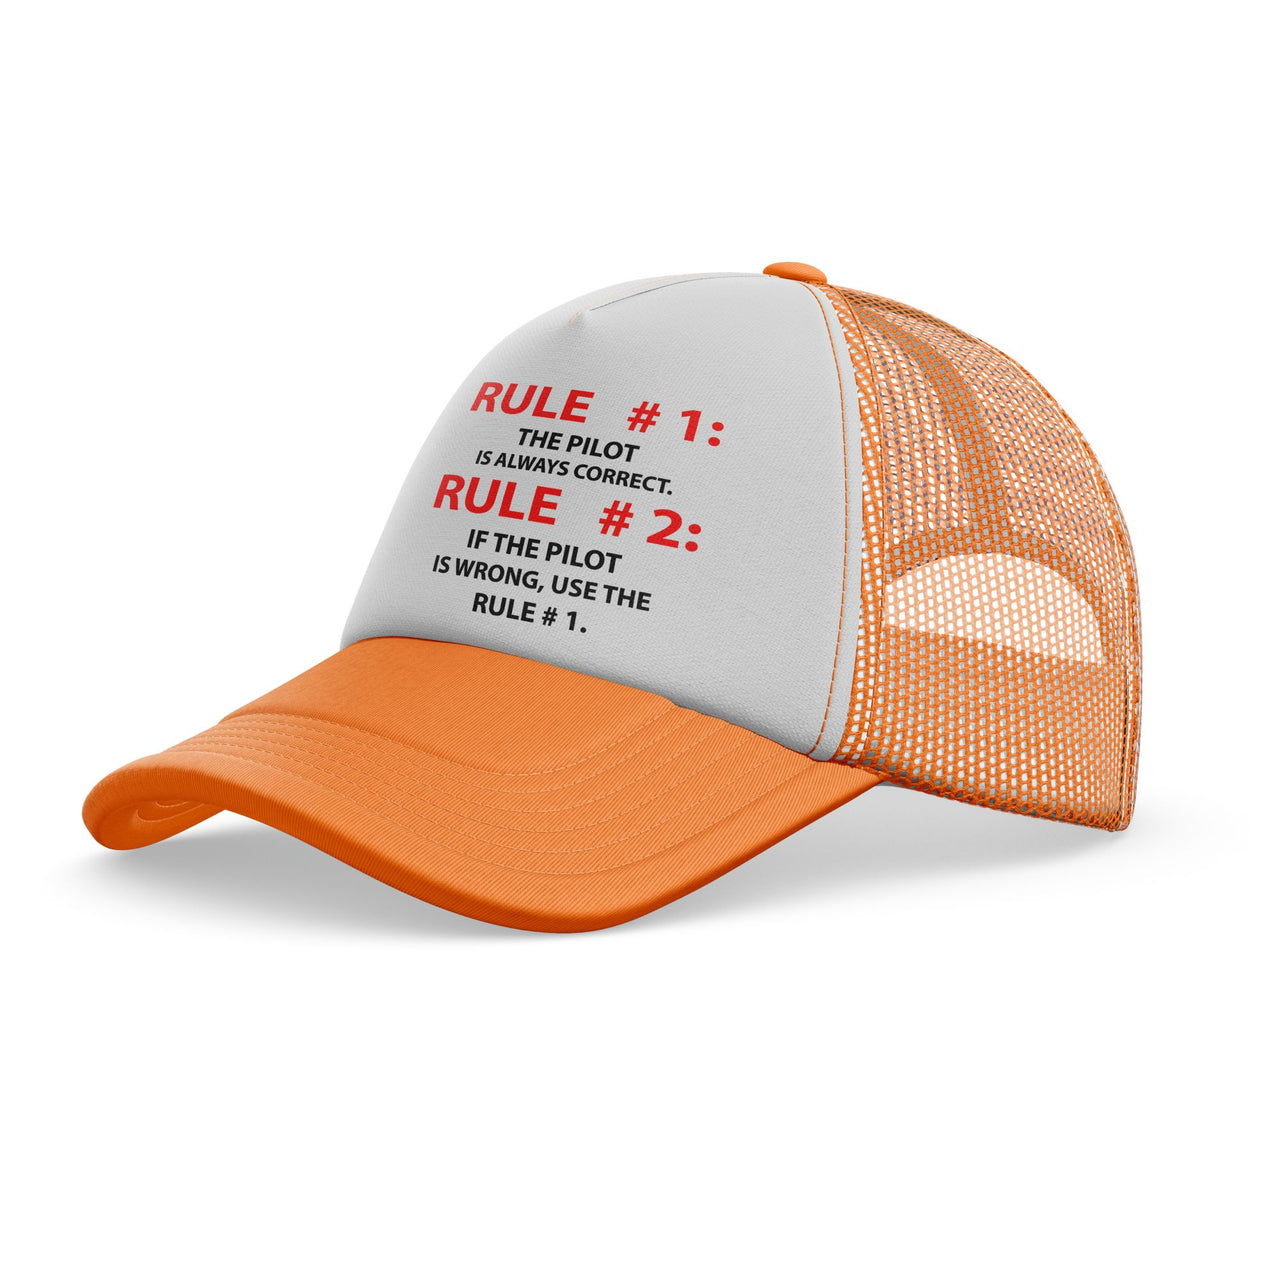 Rule 1 - Pilot is Always Correct Designed Trucker Caps & Hats